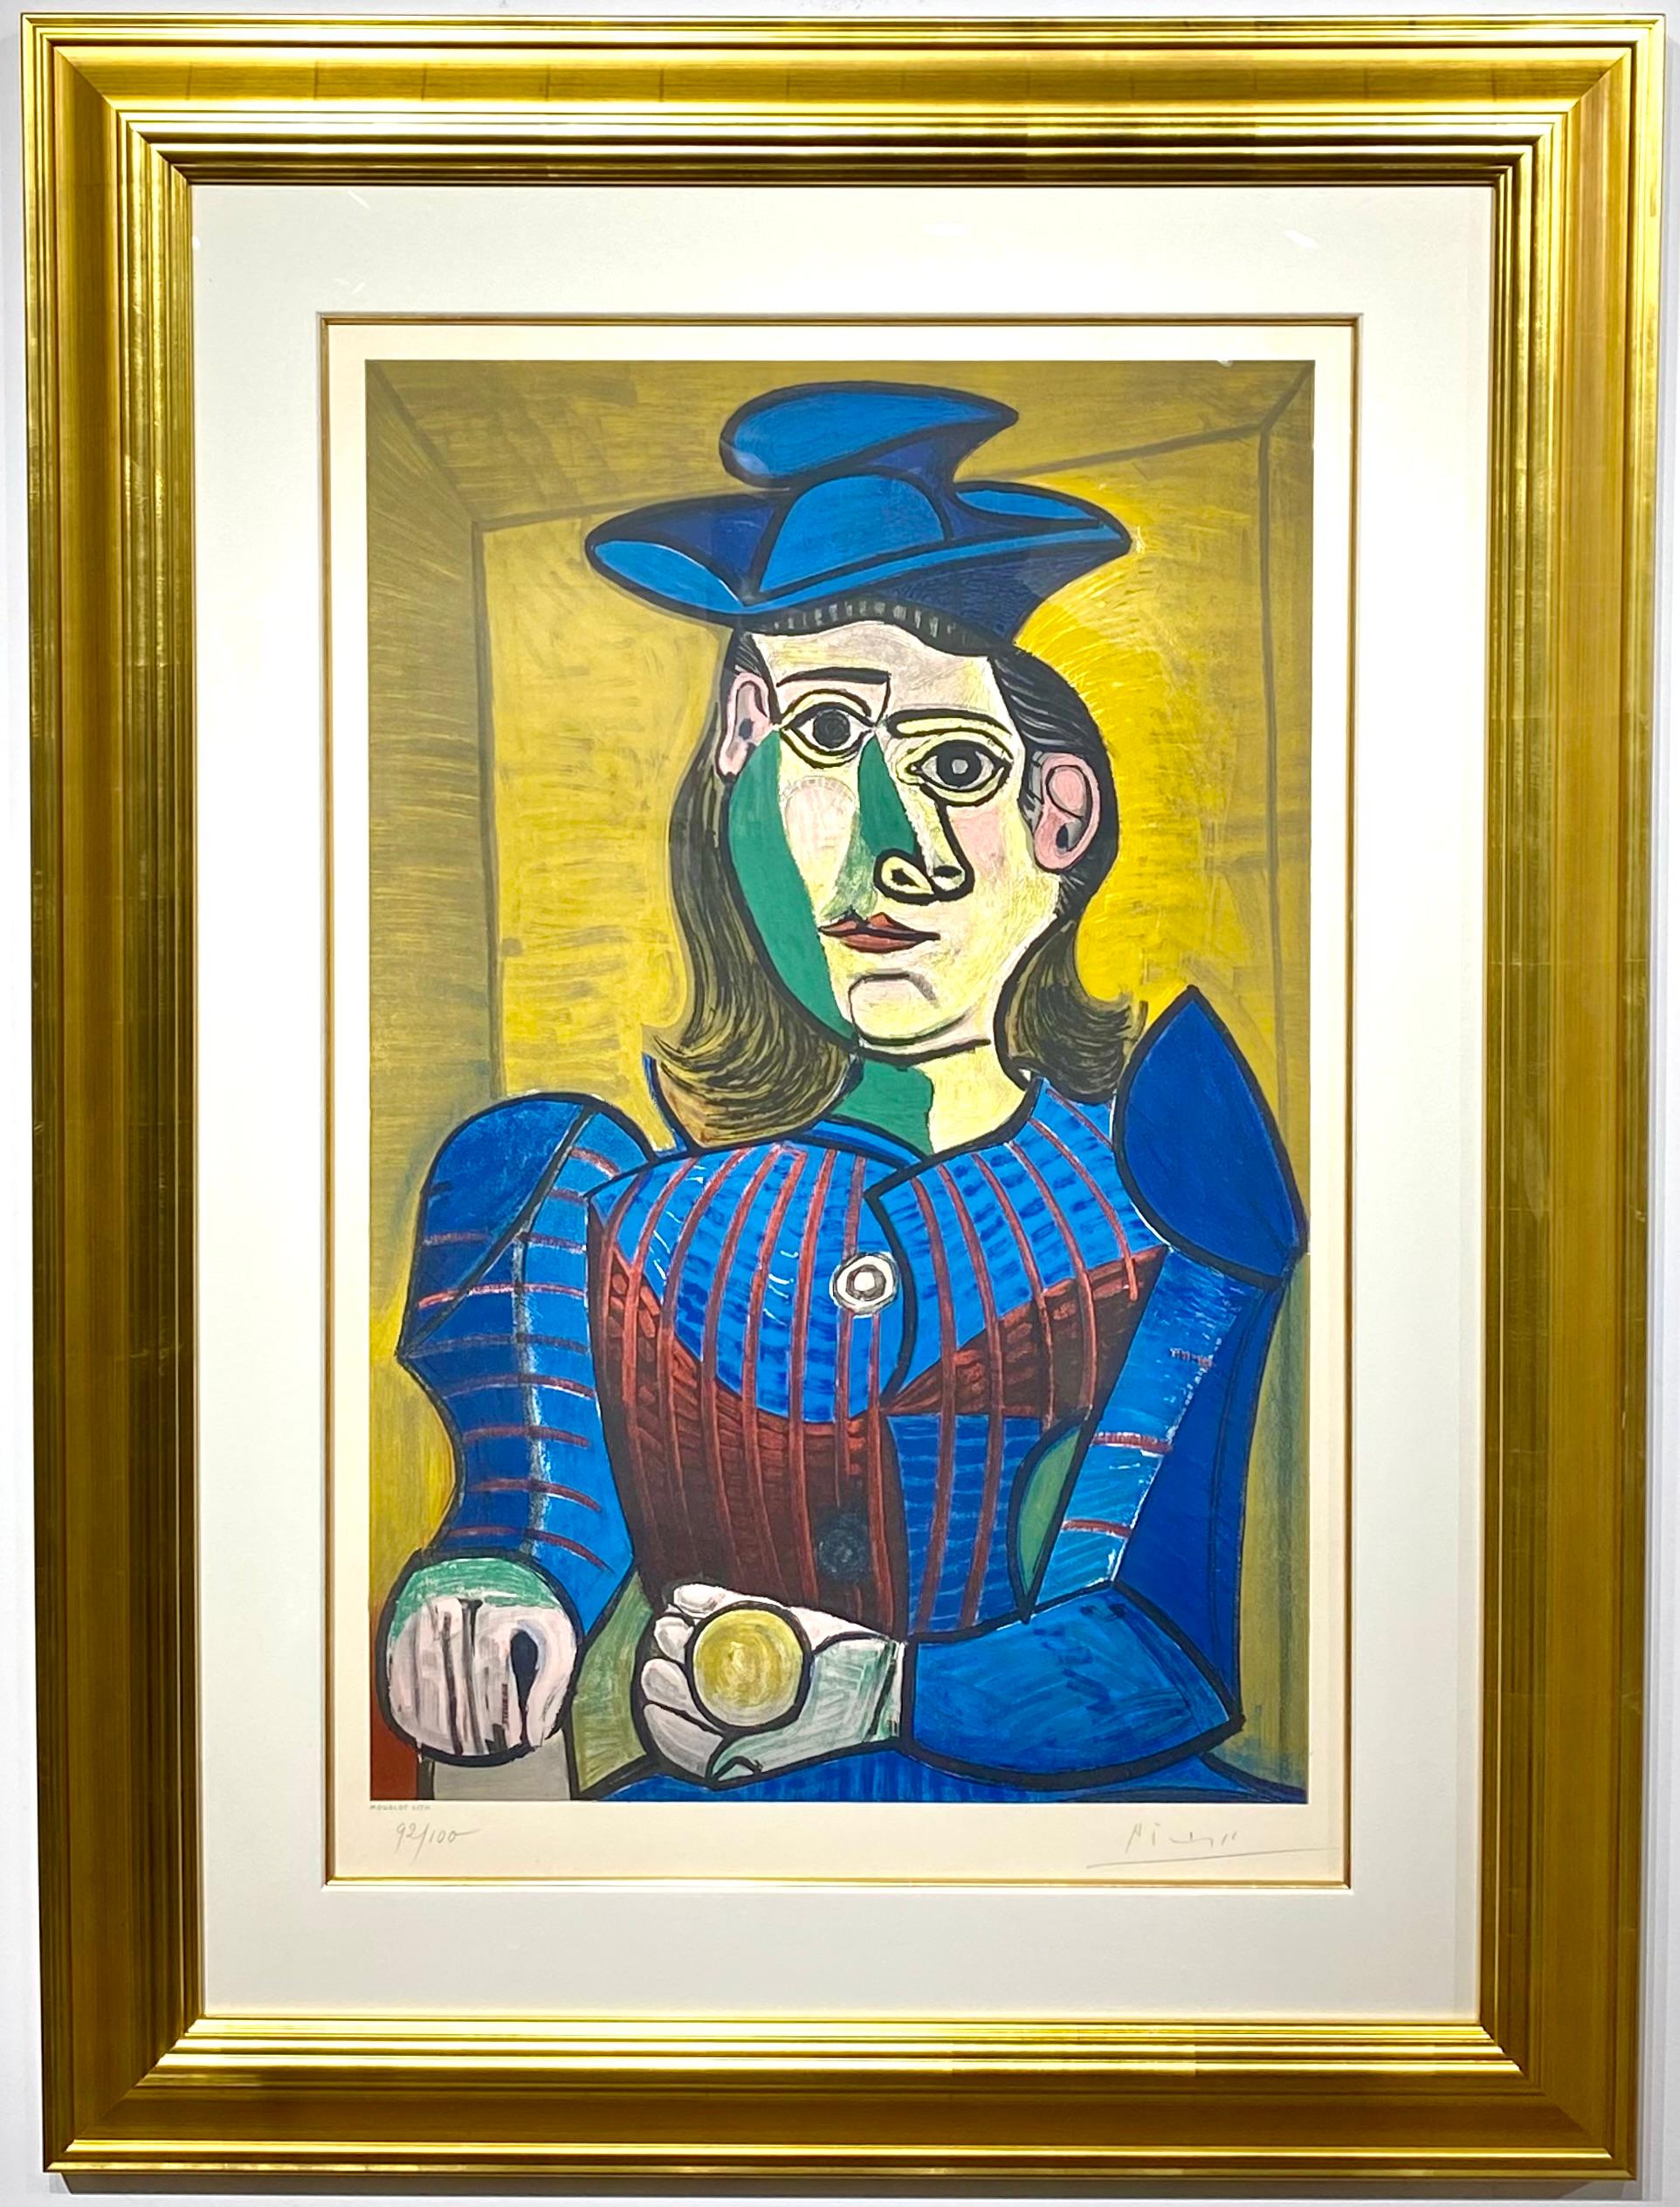 (after) Pablo Picasso Portrait Print - Pablo Picasso  "Femme assise" (Dora Maar)